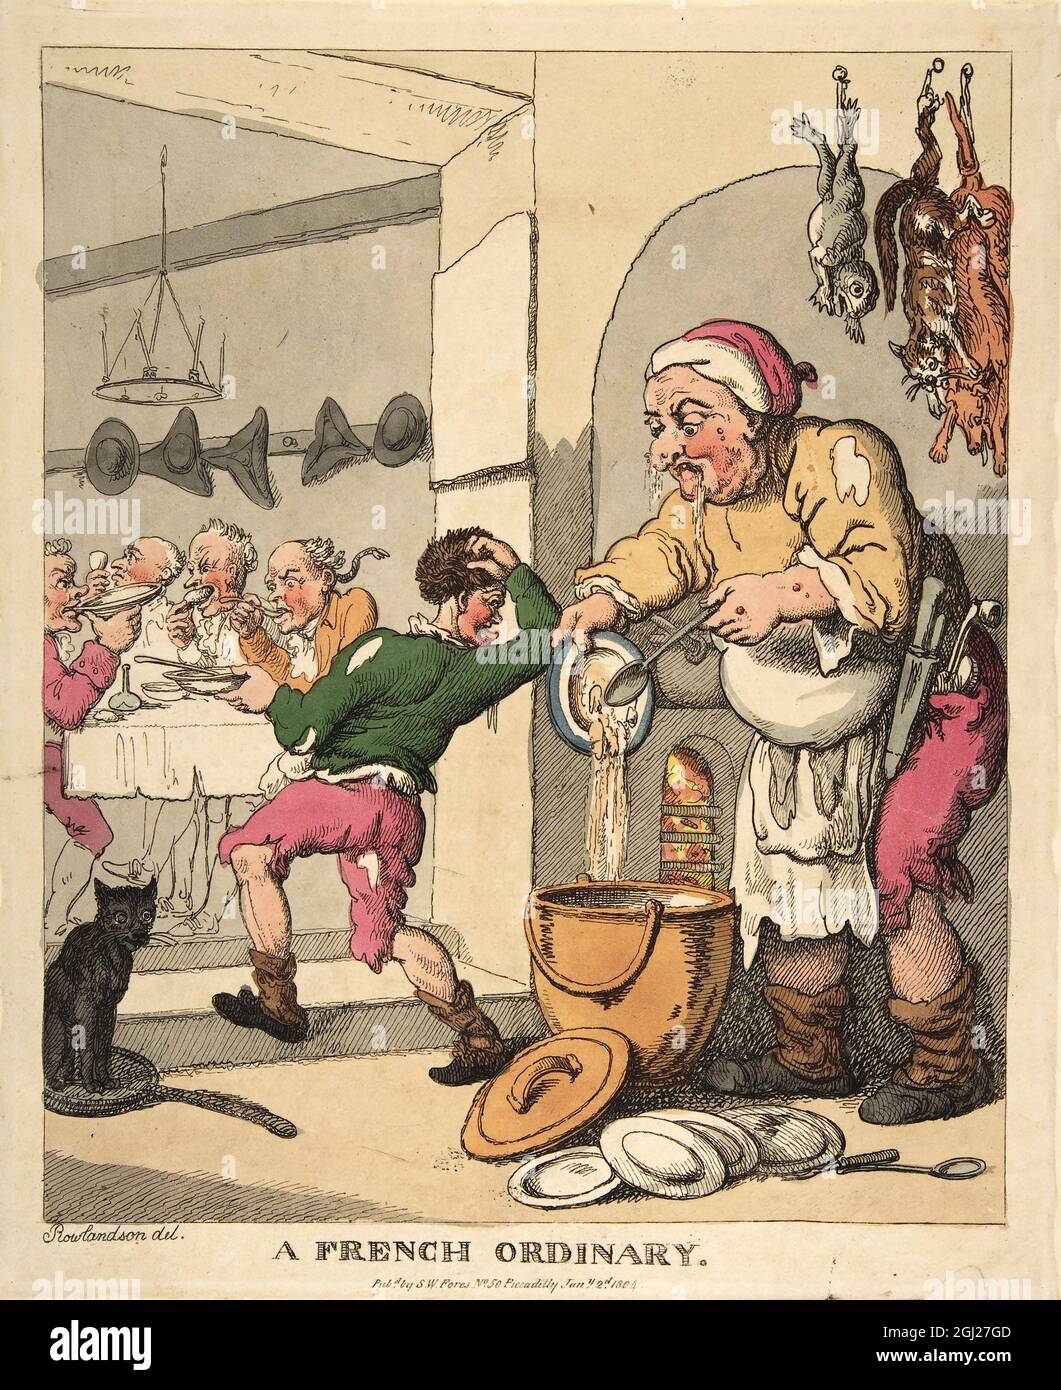 A French Ordinary 1804 Künstler: Thomas Rowlandson (1756-1827) ein englischer Künstler und Karikaturist der georgischen Ära. Als sozialer Beobachter war er ein produktiver Künstler und Druckerei. Quelle: Thomas Rowlandson/Alamy Stockfoto